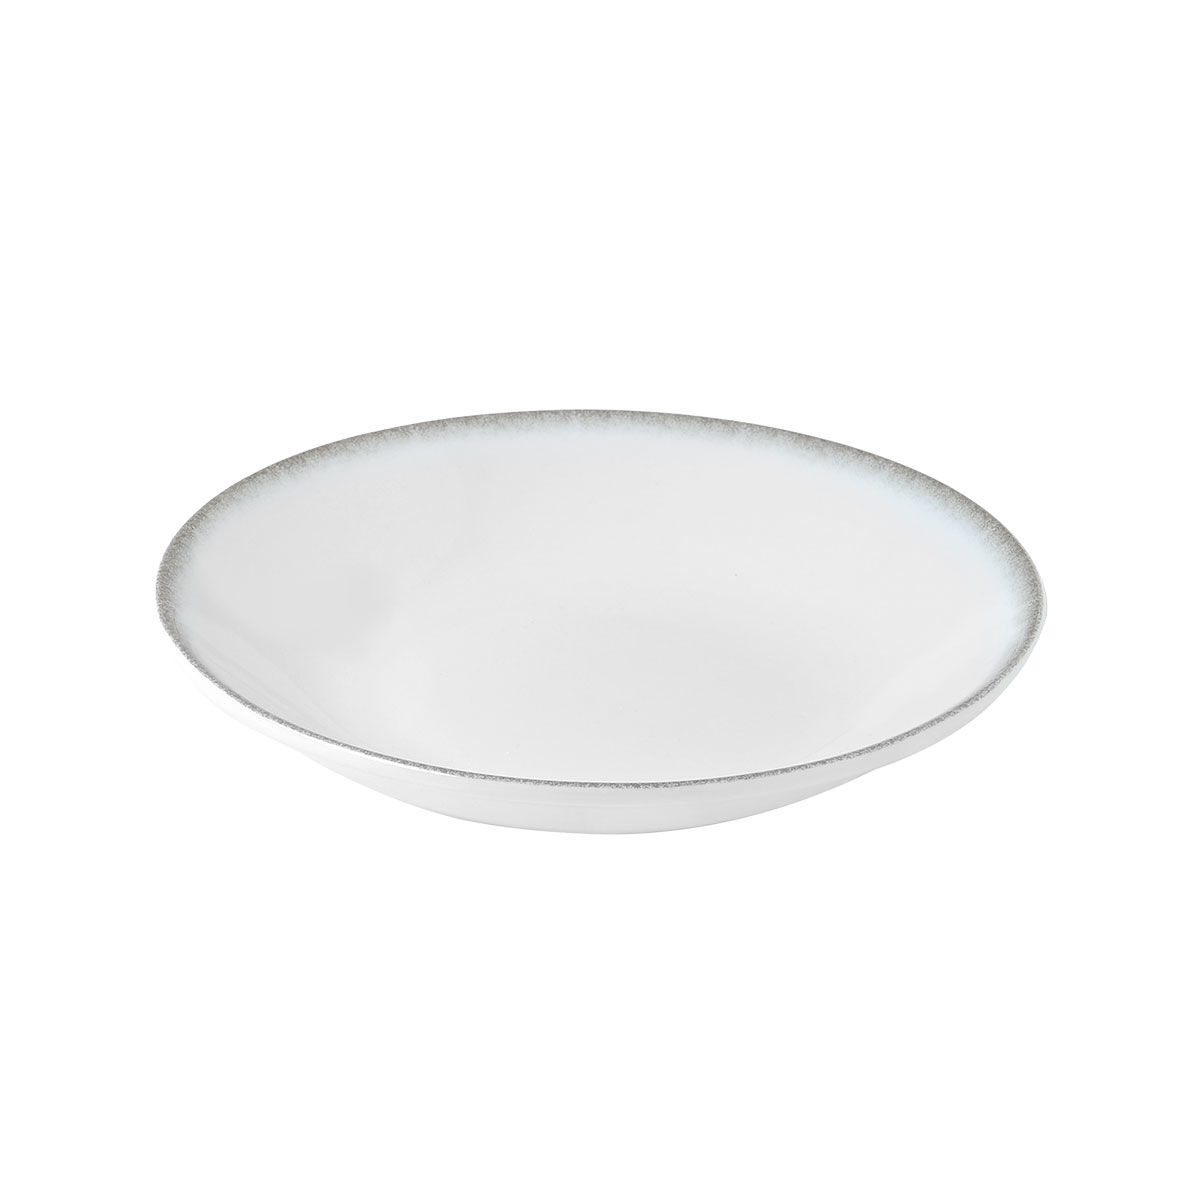 Πιάτο Βαθύ Φαγητού Πορσελάνης Pearl White Estia 23εκ.07-15350 (Σετ 2 Τεμάχια) (Υλικό: Πορσελάνη, Χρώμα: Λευκό, Μέγεθος: Μεμονωμένο) – estia – 07-15350